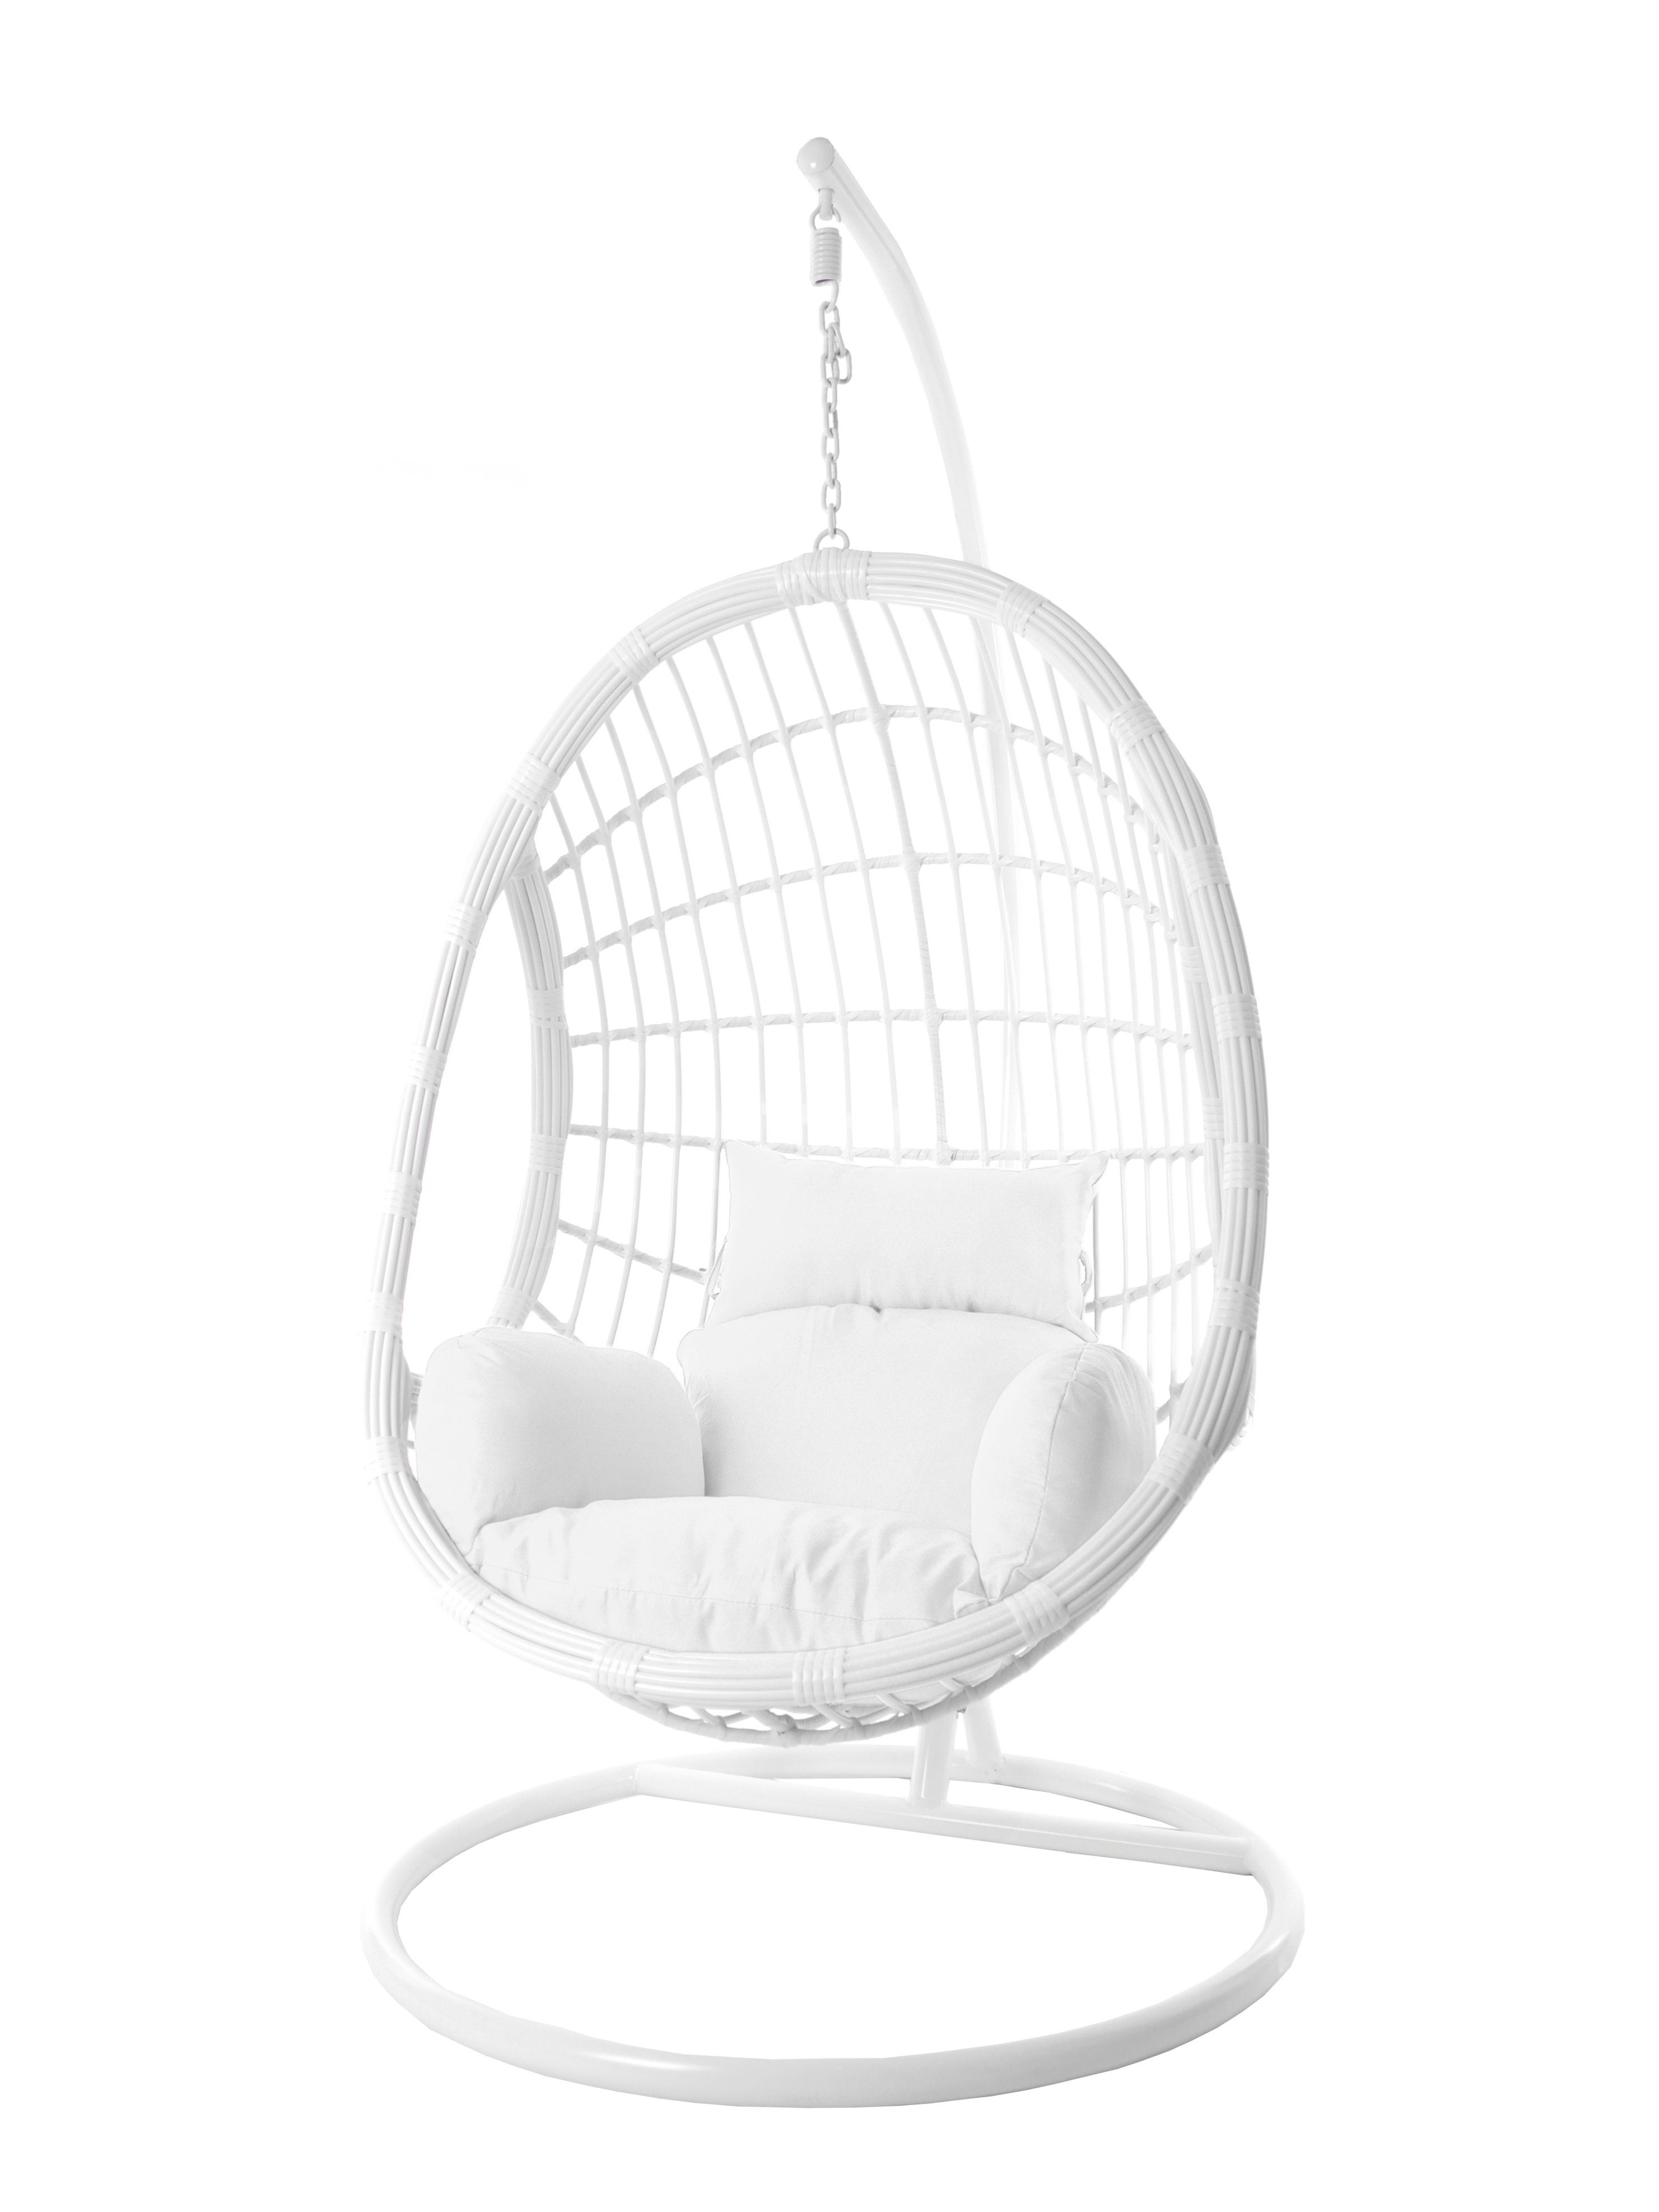 KIDEO Hängesessel Loungesessel weiß, in weiß, moderner und PALMANOVA Loungemöbel Hängesessel Swing Gestell Chair, mit Hängesessel Kissen